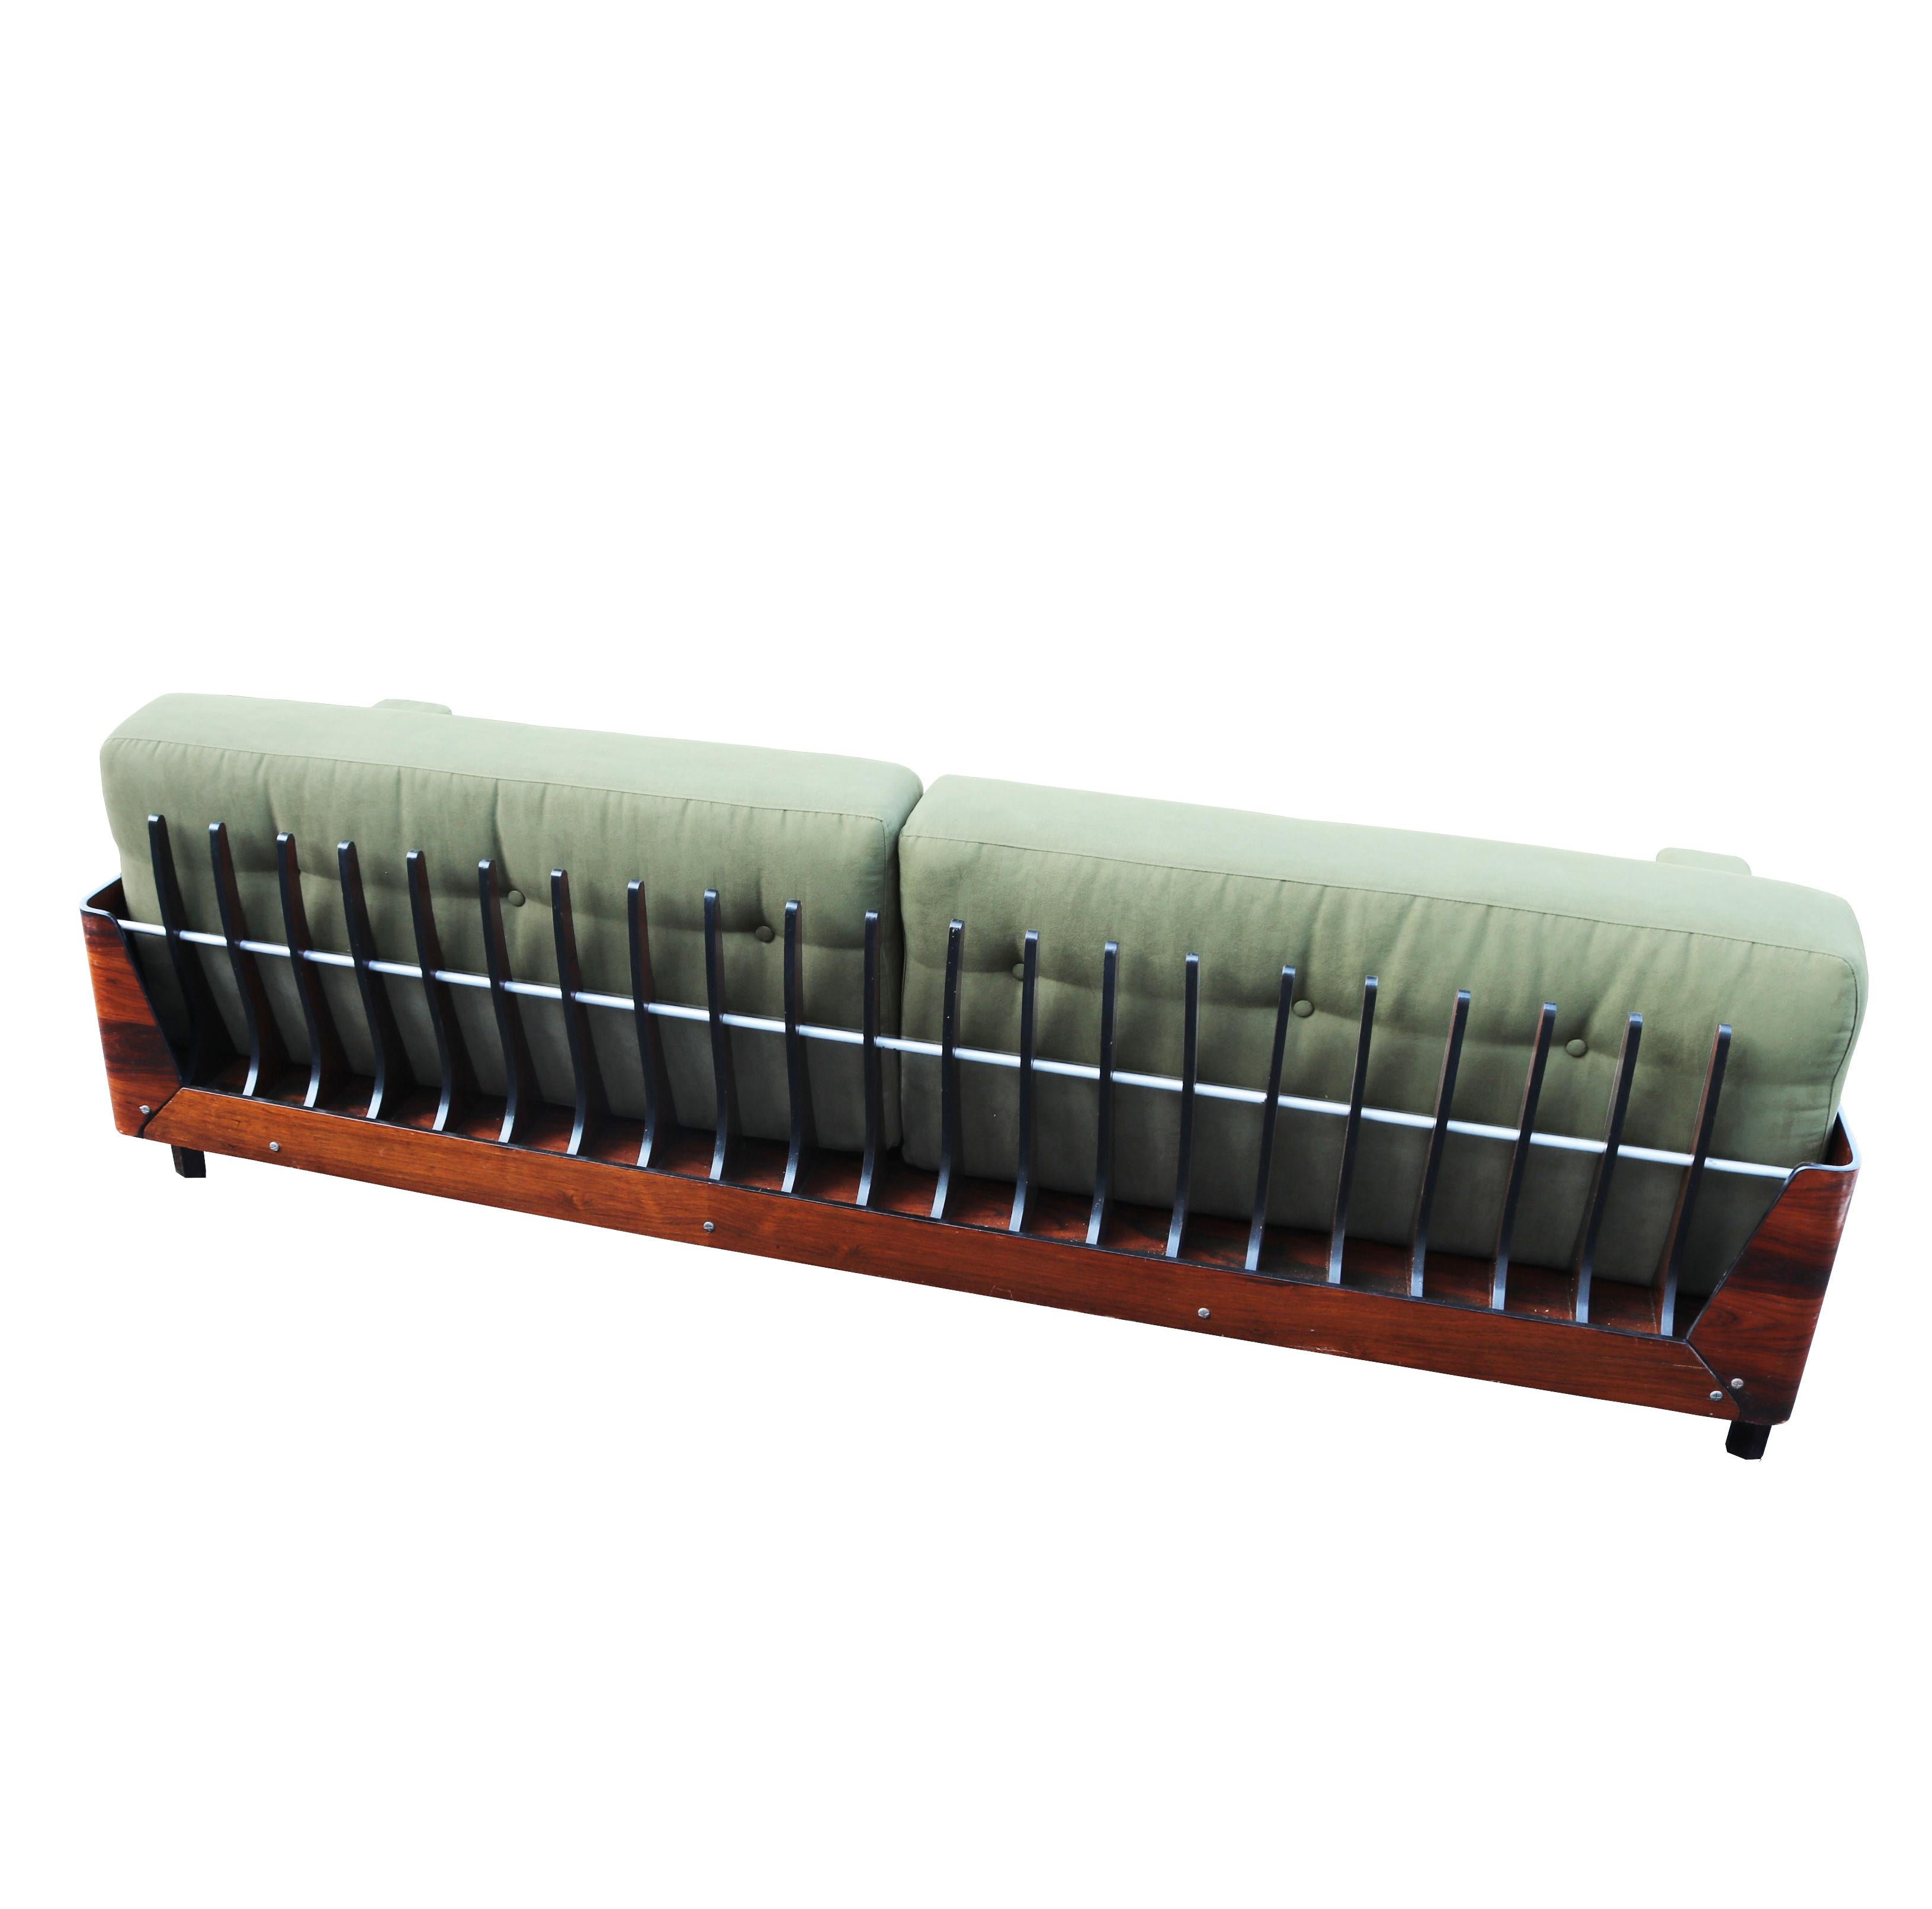 1960s sofa styles